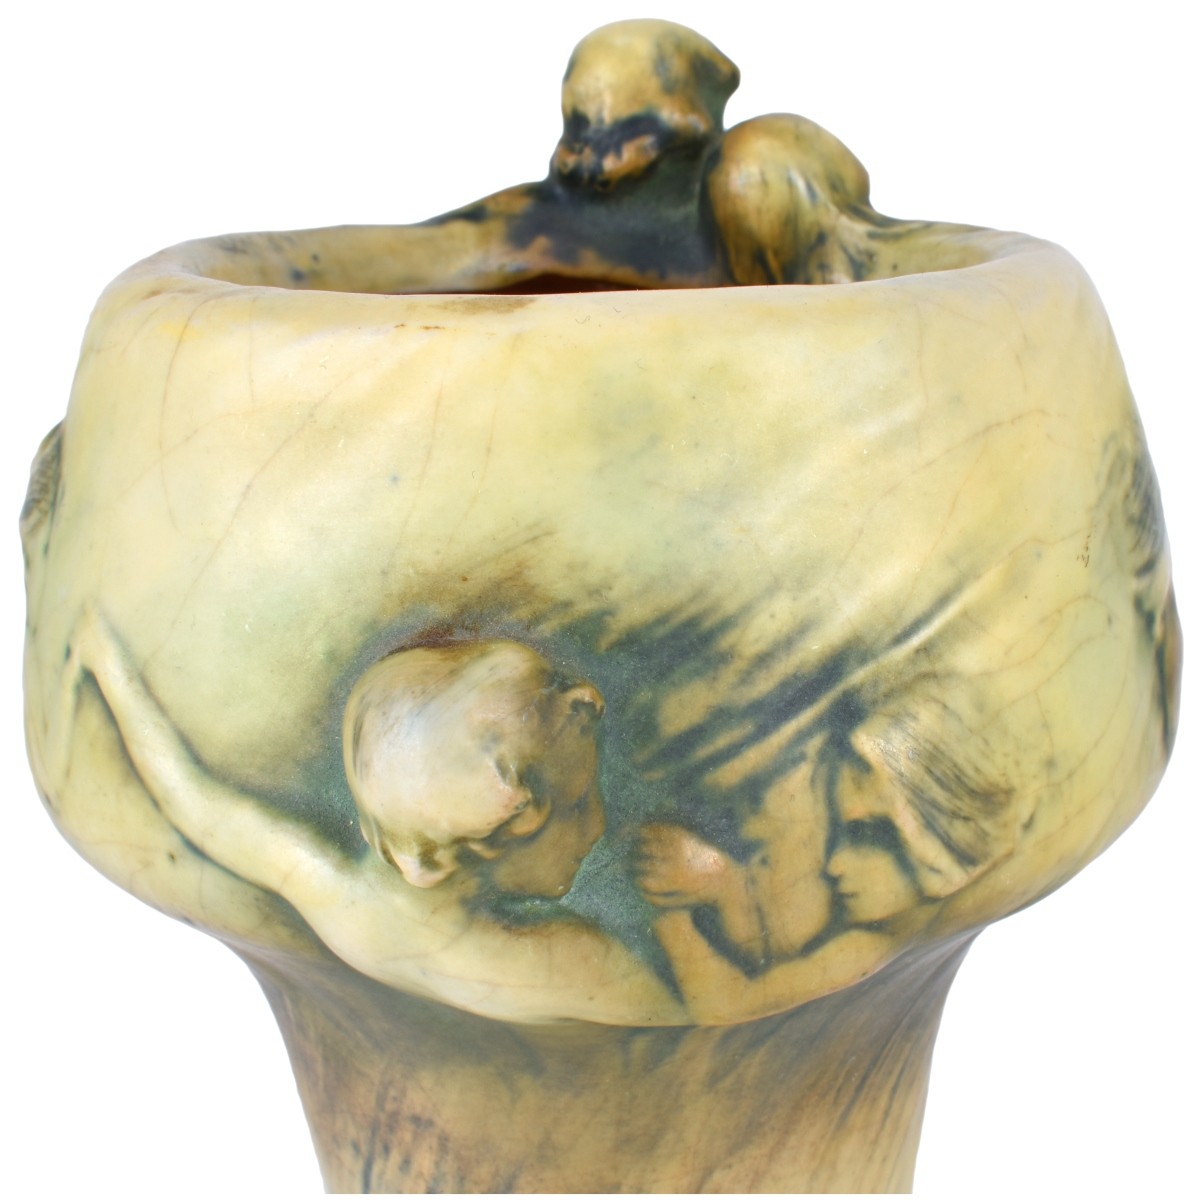 Amphora "Fates" Vase